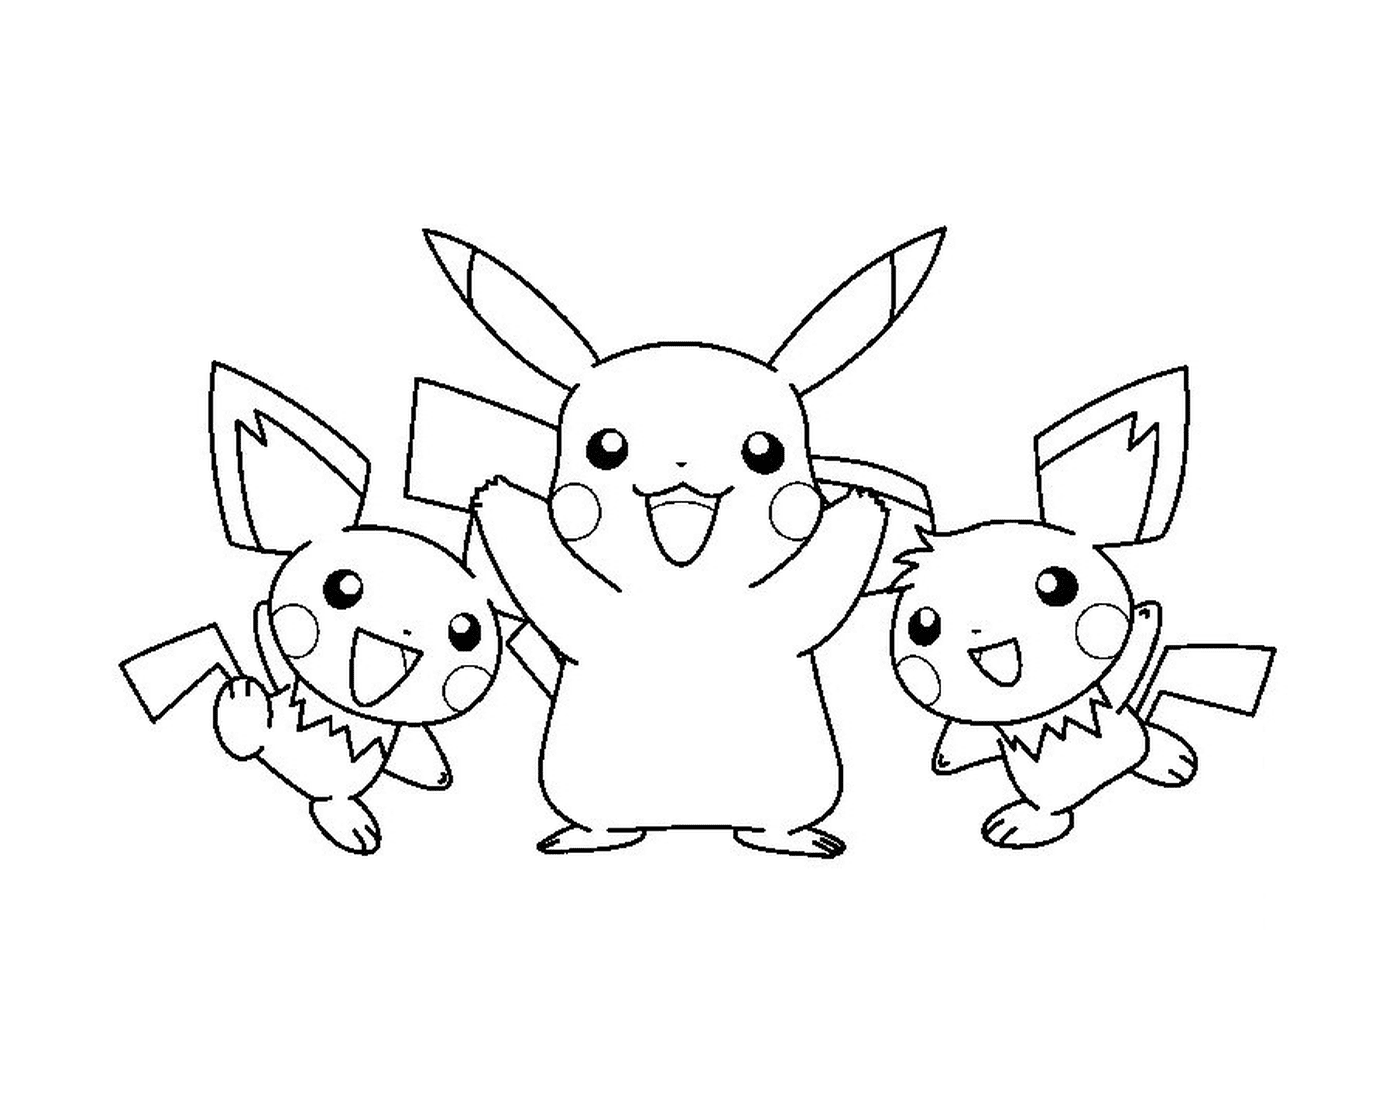  Drei Pokémons zusammen 